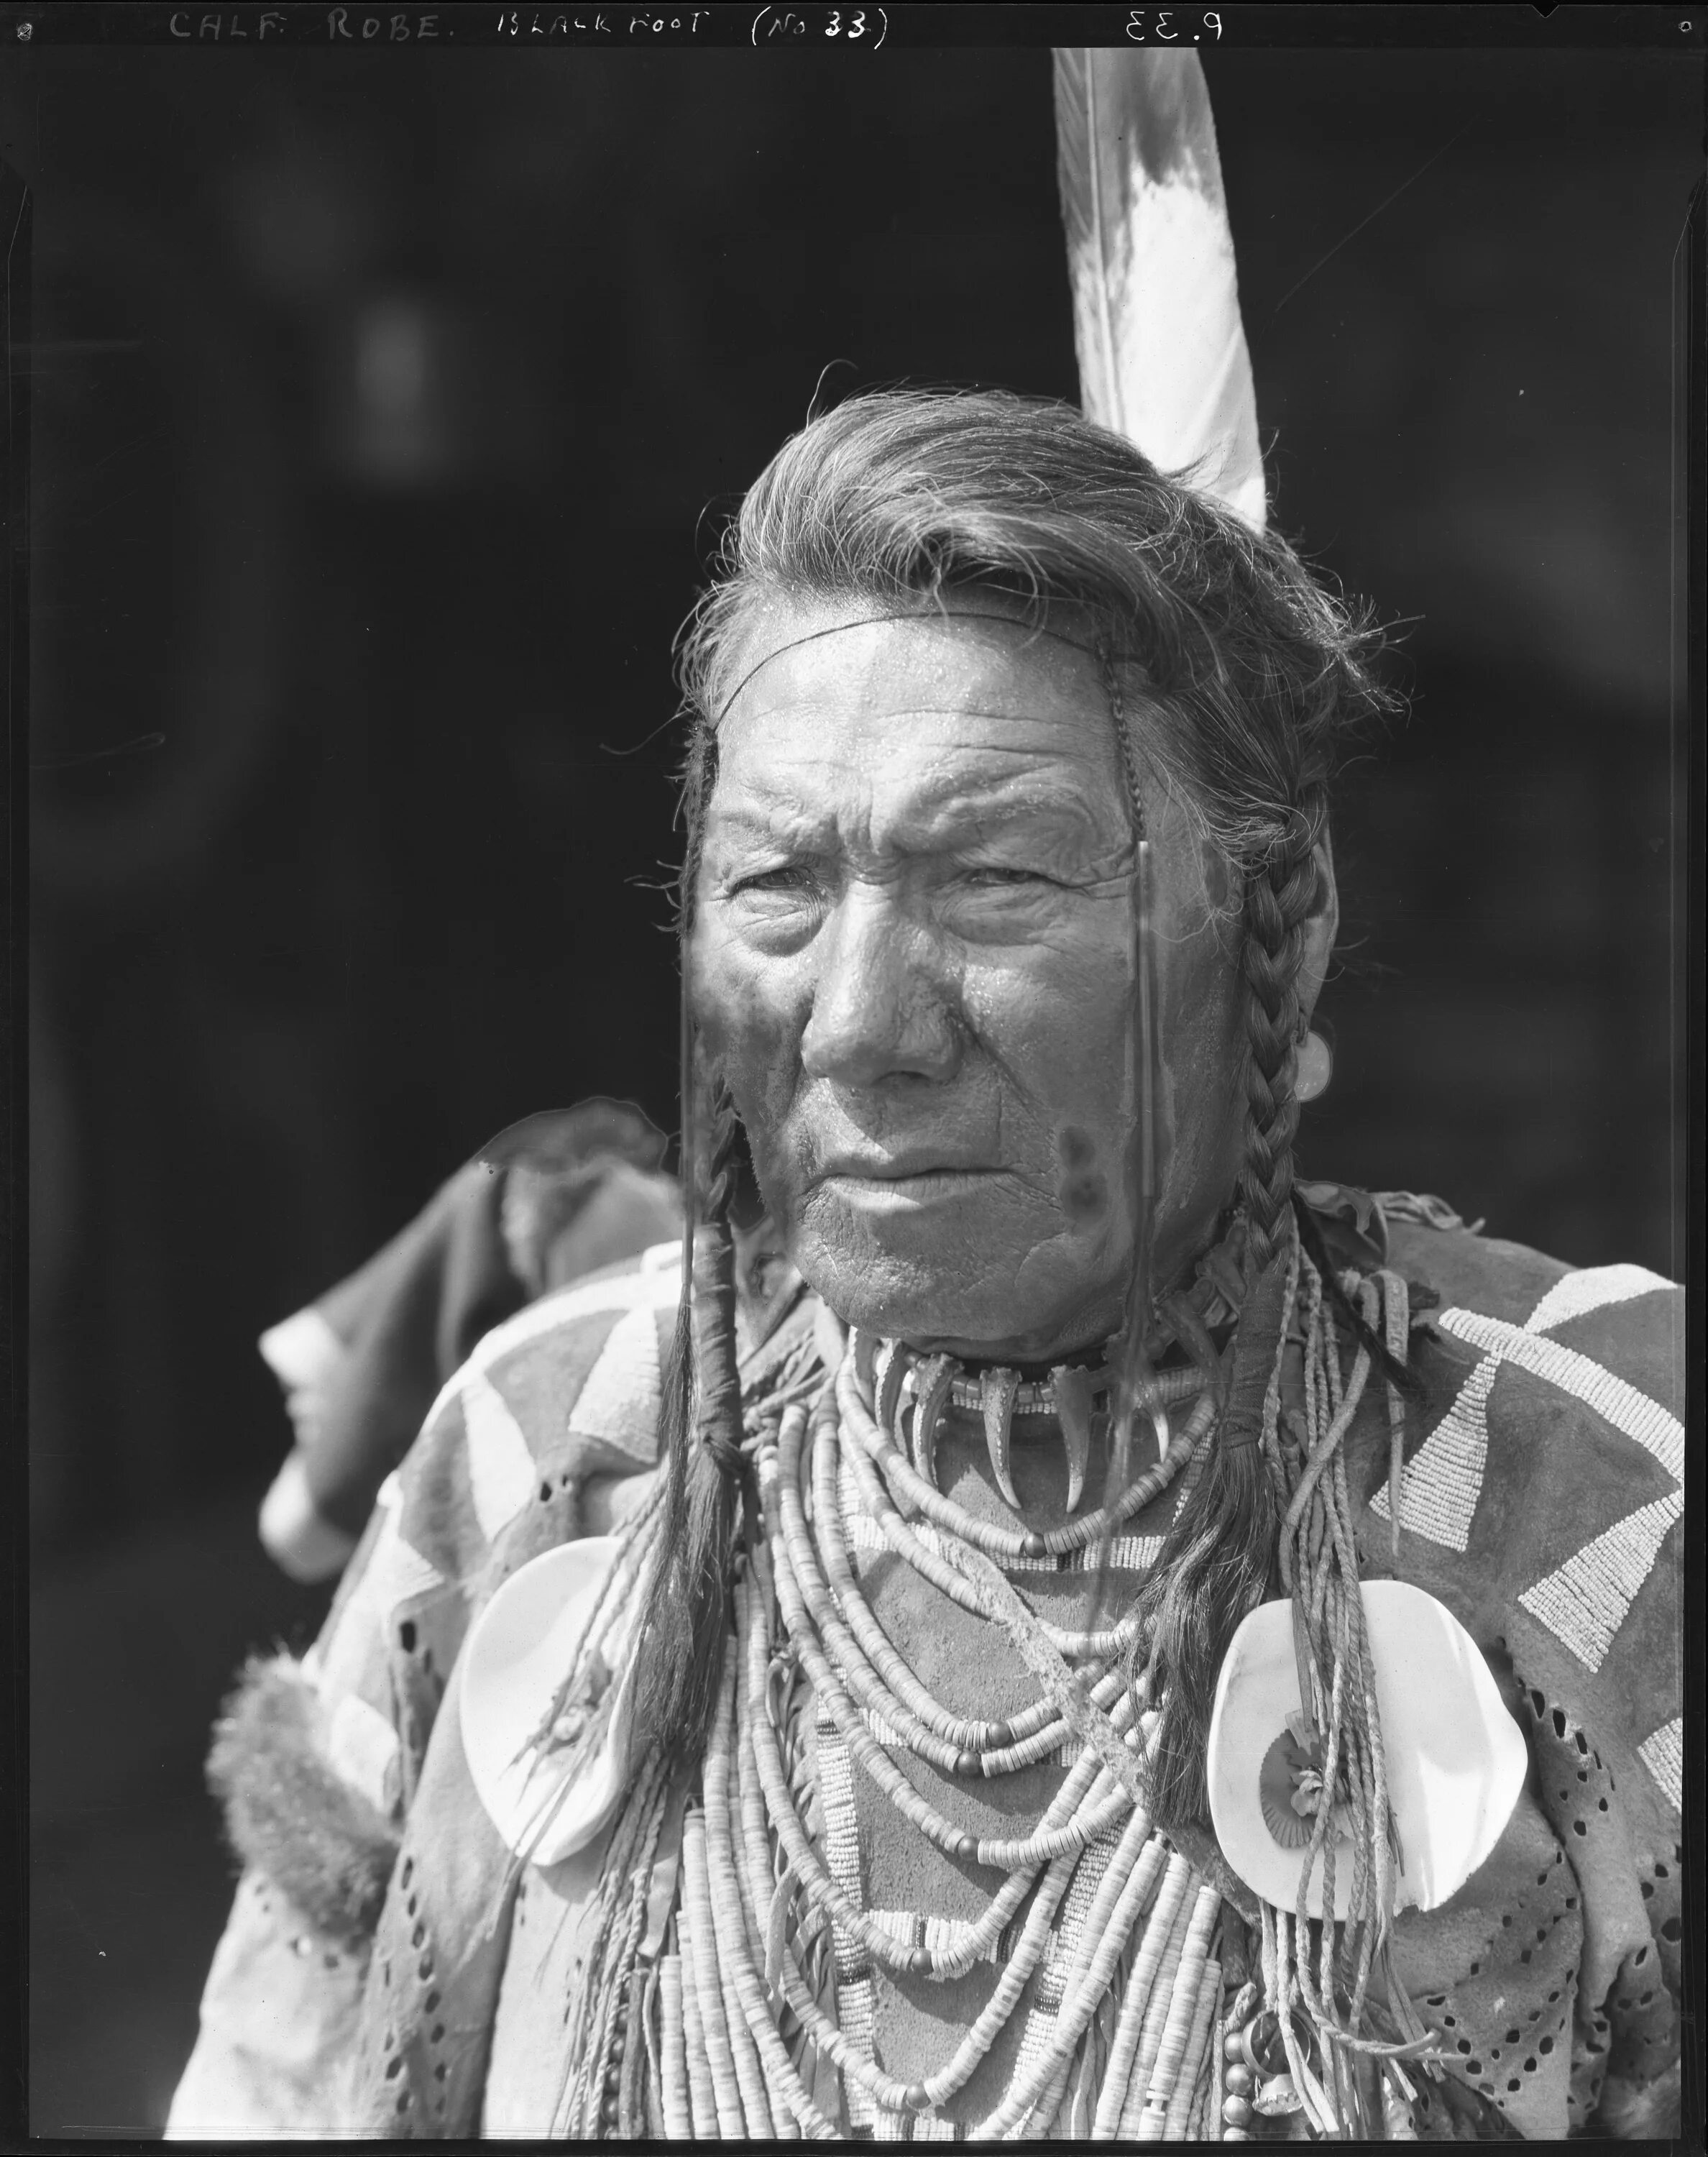 Blackfoot племена индейцев. Черноногие индейцы. Индейцы Канады племена. Коренные жители Канады индейцы.